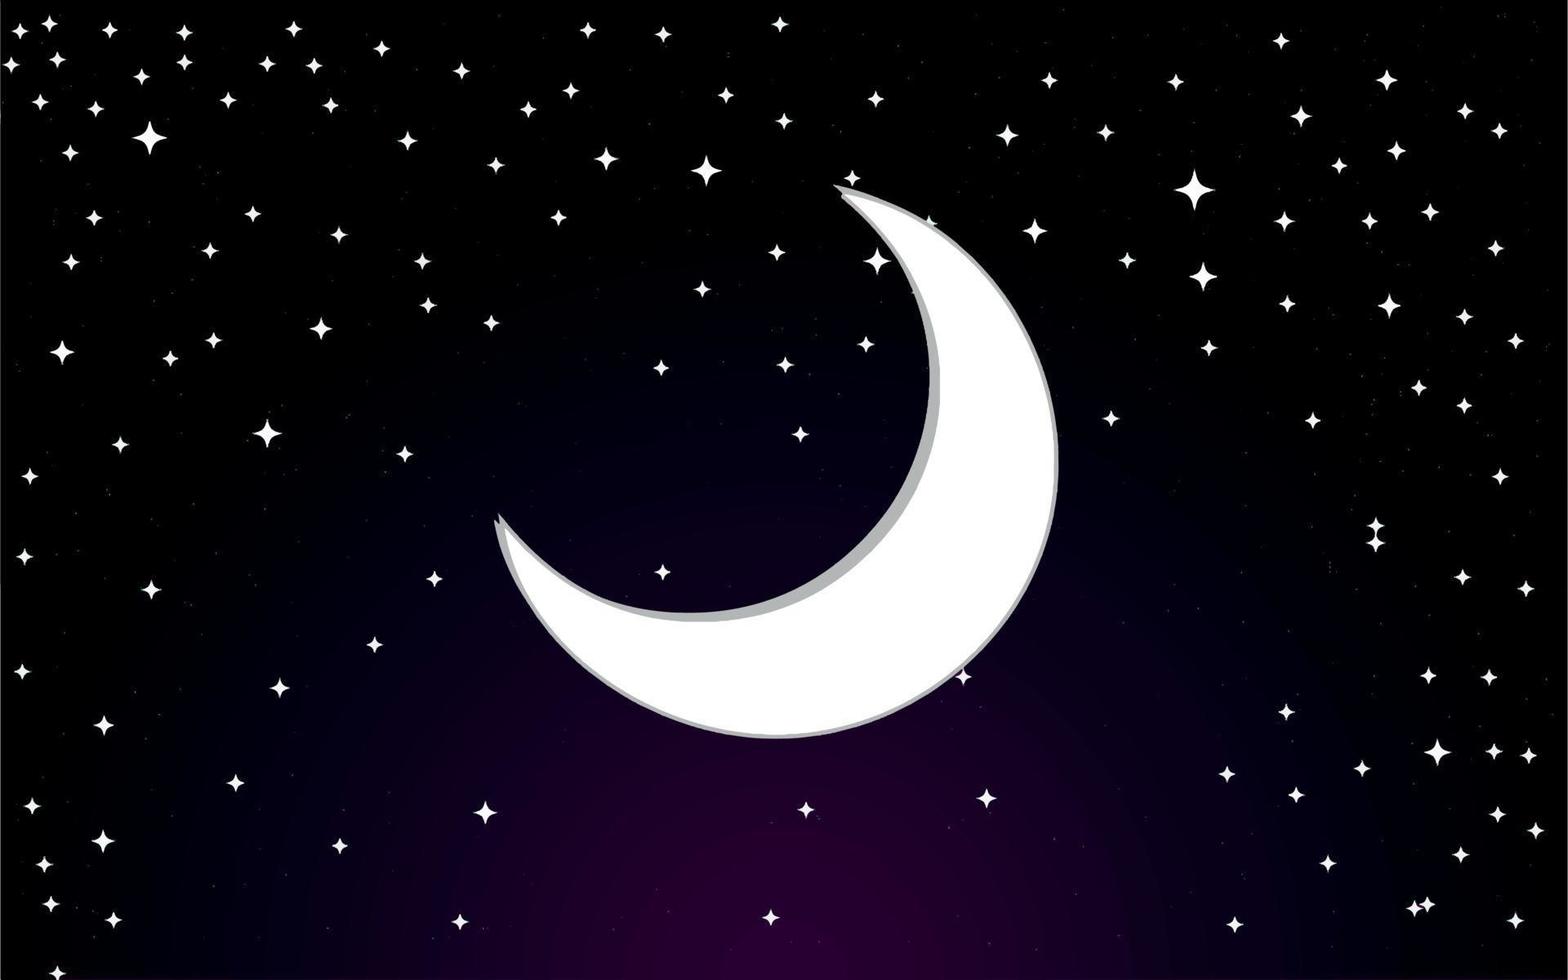 galassia dello spazio esterno mezza luna e stelle nell'illustrazione di vettore della carta da parati del fondo del cielo notturno